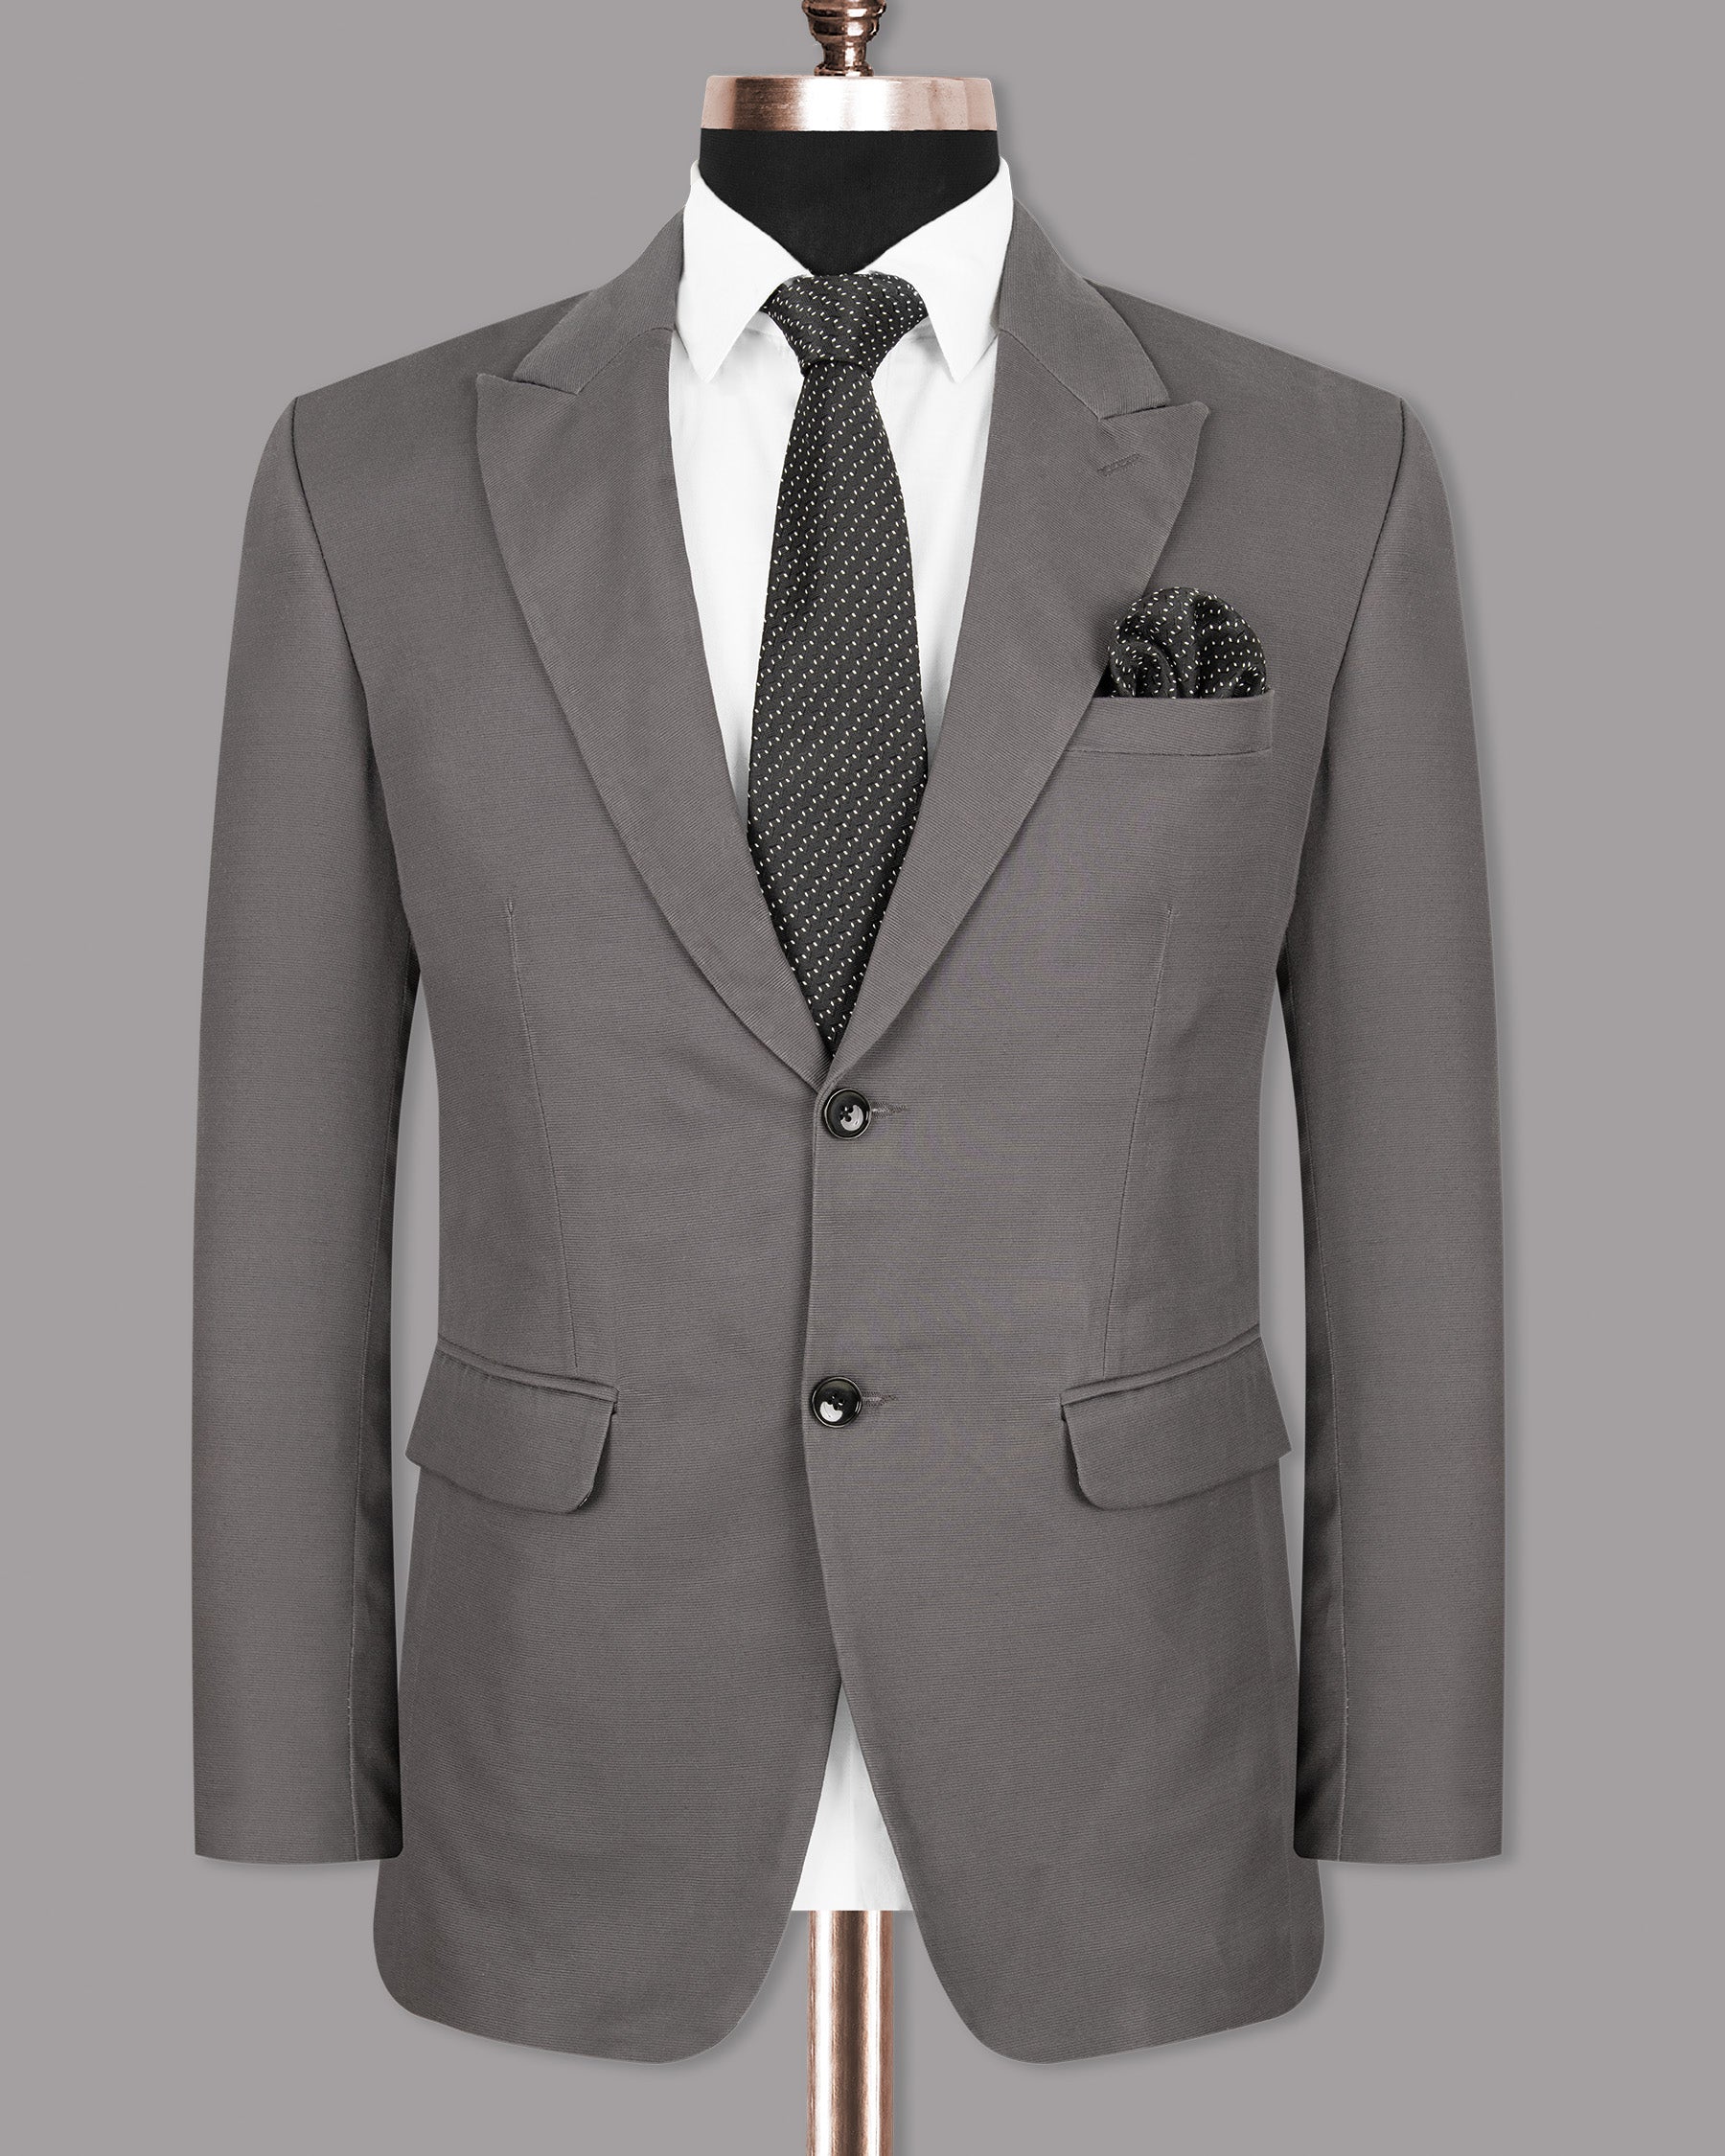 Bright Grey Premium Cotton Suit ST1283-SBP-36, ST1283-SBP-38, ST1283-SBP-40, ST1283-SBP-42, ST1283-SBP-44, ST1283-SBP-46, ST1283-SBP-52, ST1283-SBP-54, ST1283-SBP-48, ST1283-SBP-50, ST1283-SBP-56, ST1283-SBP-58, ST1283-SBP-60